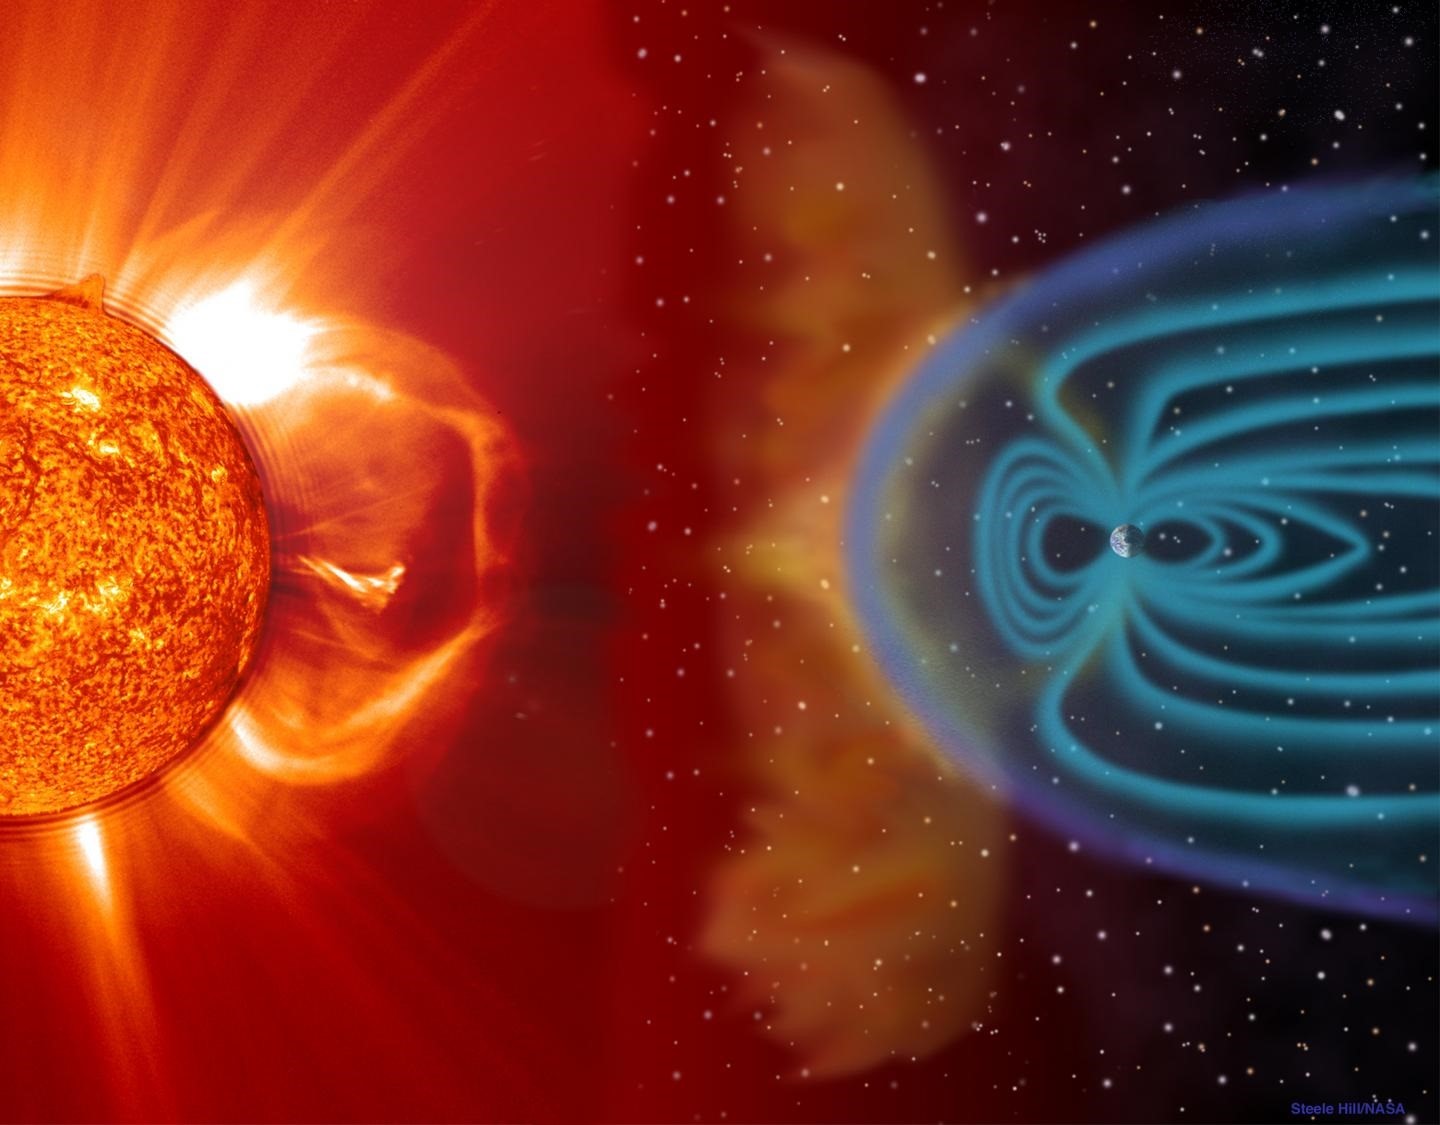 El Sol podría convertirse en una estrella gigante roja y envolver la Tierra  - Infobae